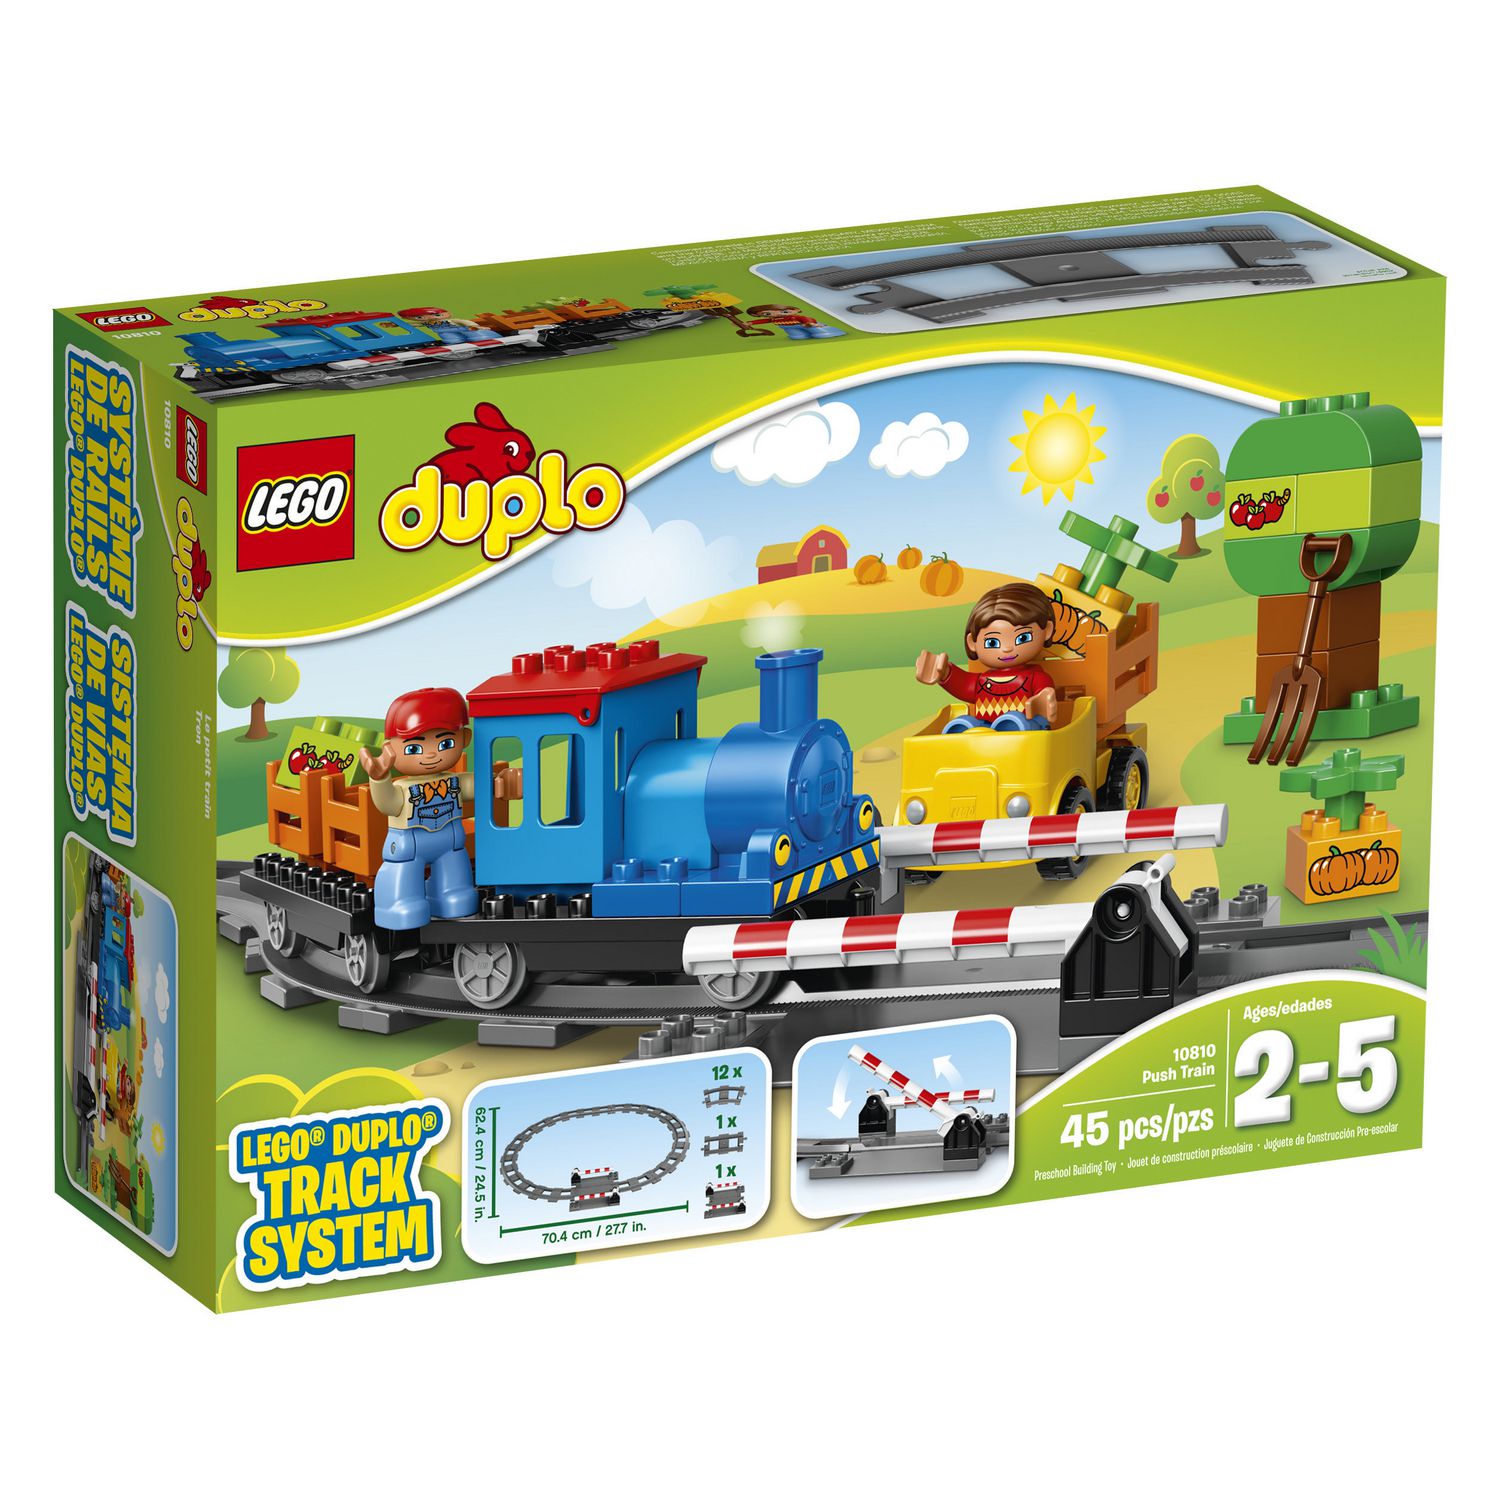 LEGO 10874 Duplo Ma Ville Le Train à Vapeur, avec Sons, Lumières